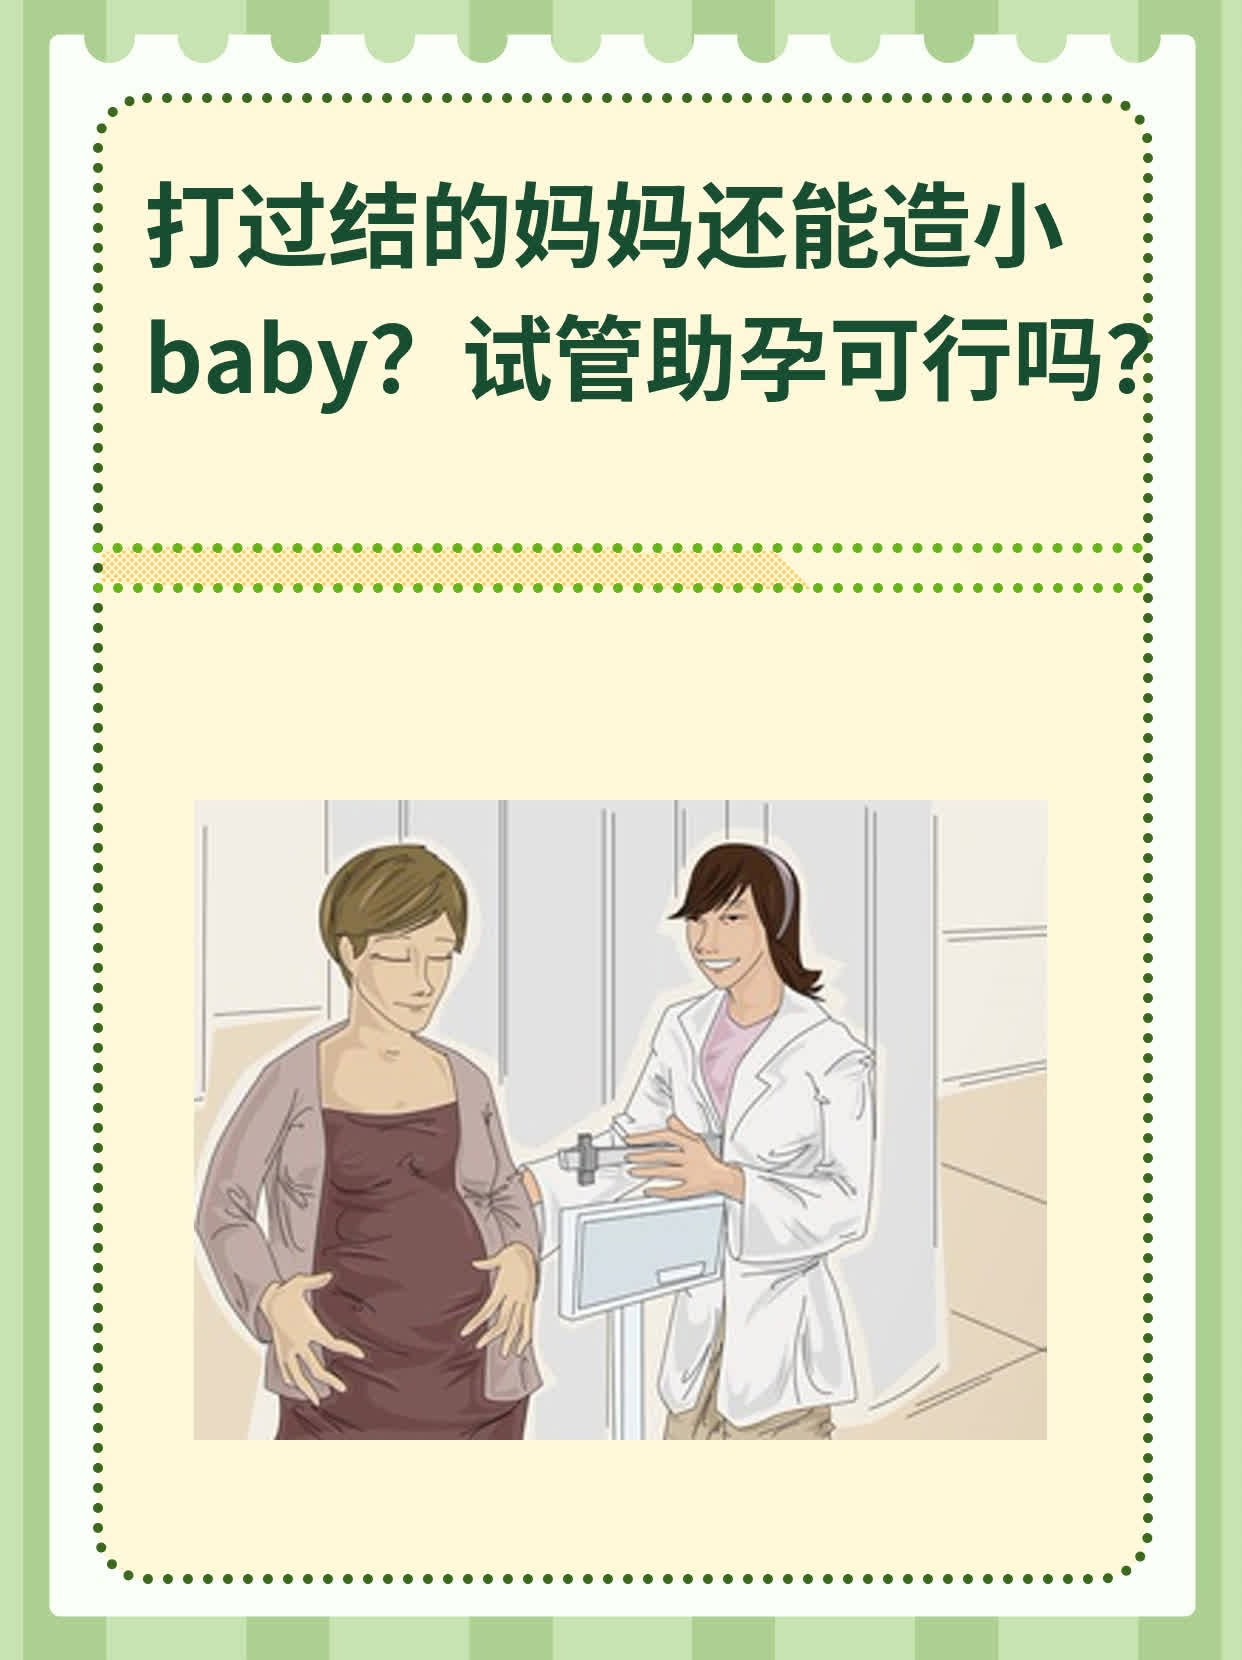 打过结的妈妈还能造小baby？试管助孕可行吗？